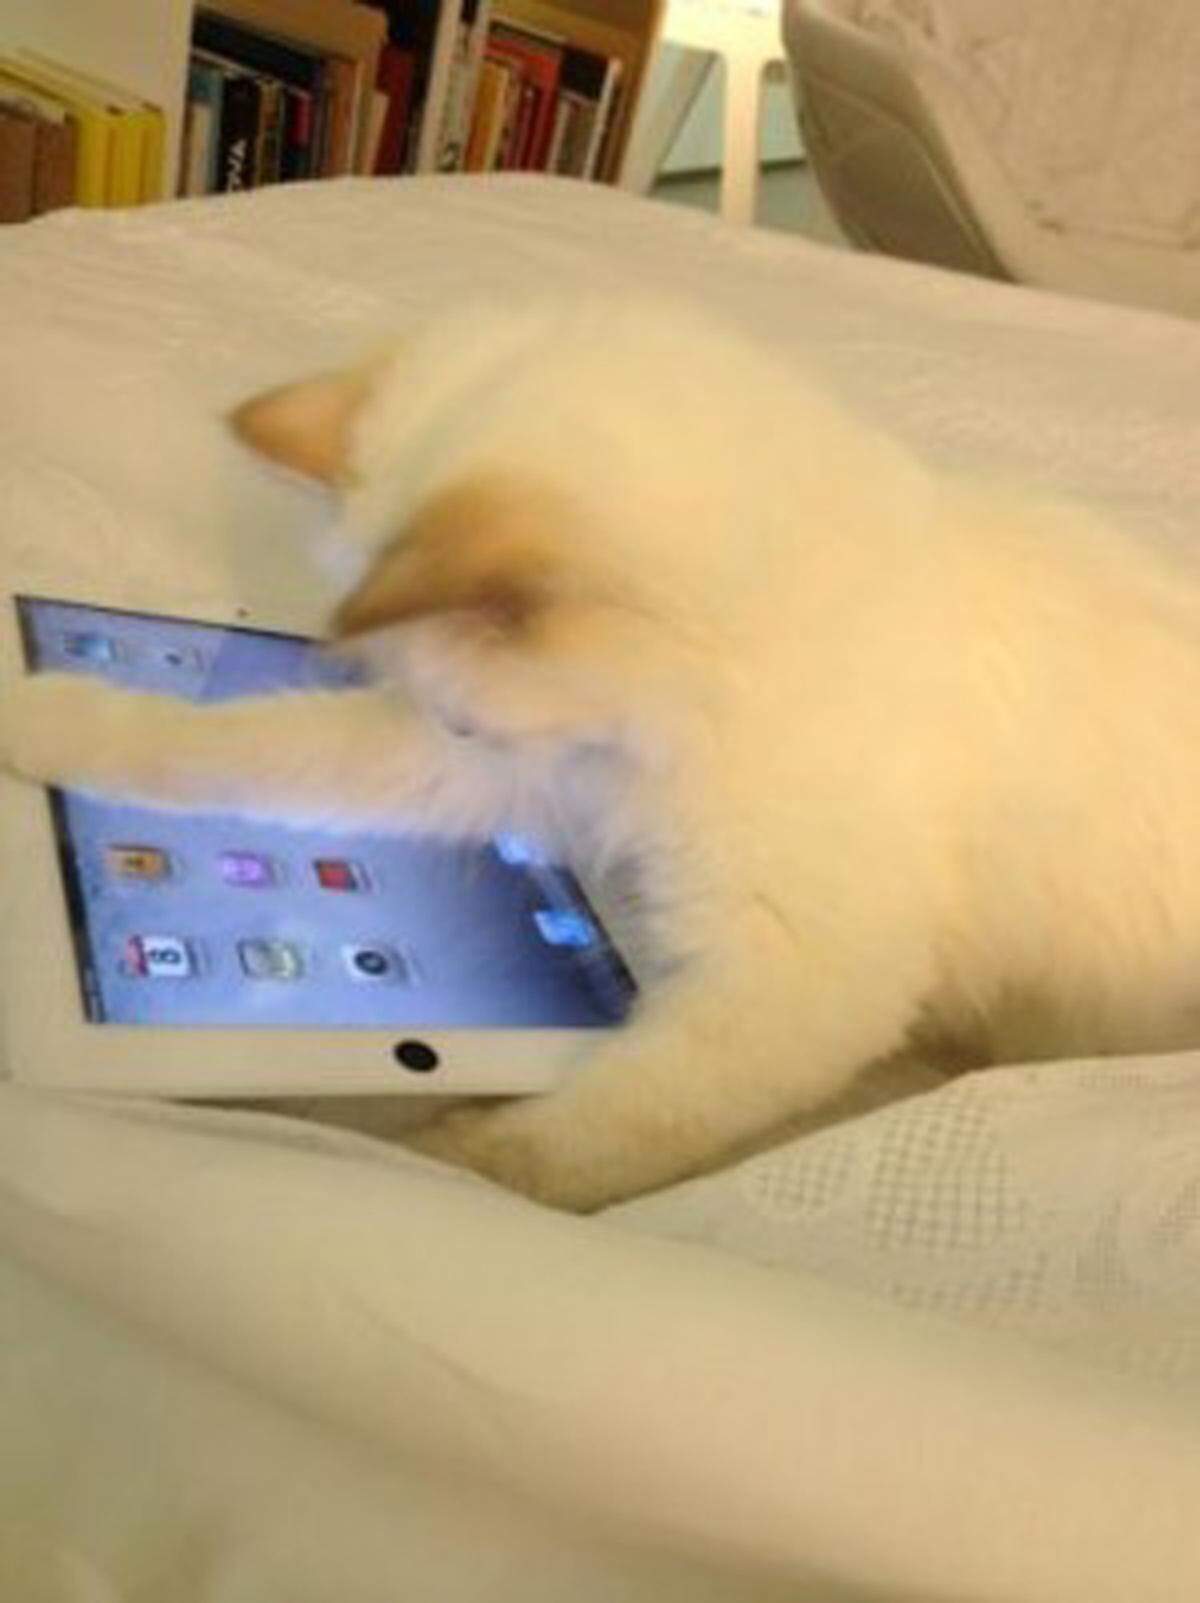 Seit Juni auf Twitter aktiv. Choupette, die Katze Karl Lagerfelds, hat schon über 8000 Follower.